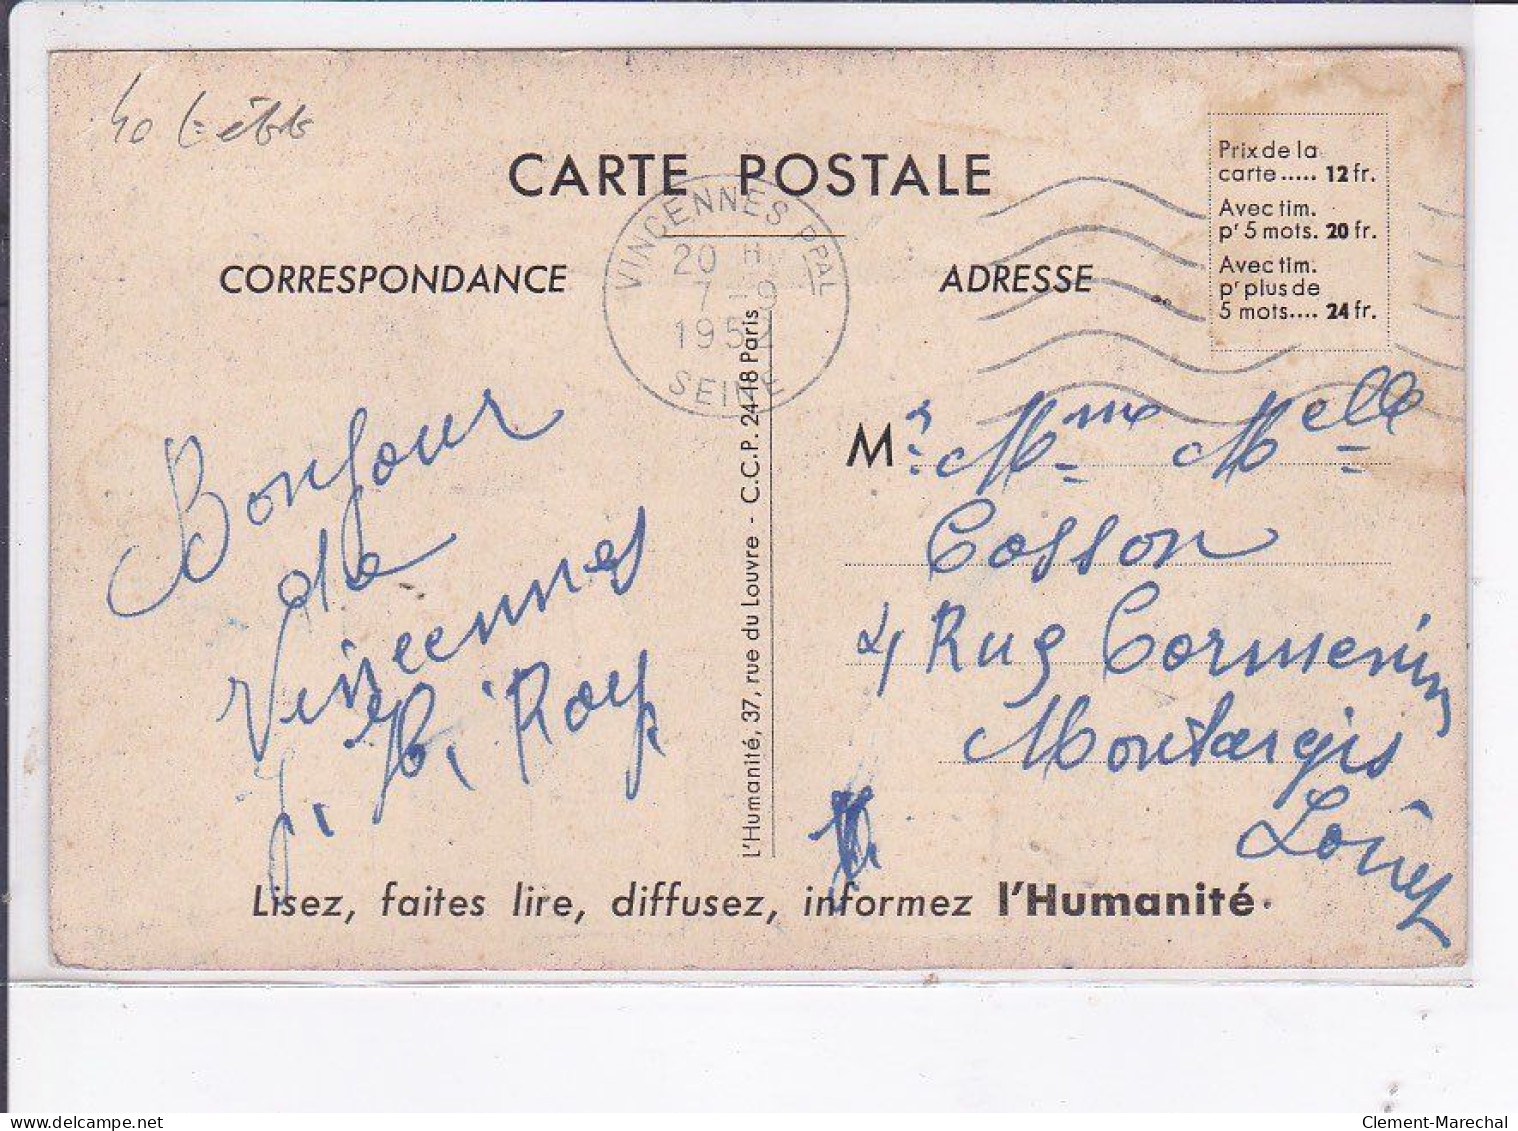 PUBLICITE : Fête De L'Humanité Au Bois De Vincennes En 1952 (Jean Eiffel) - état - Werbepostkarten